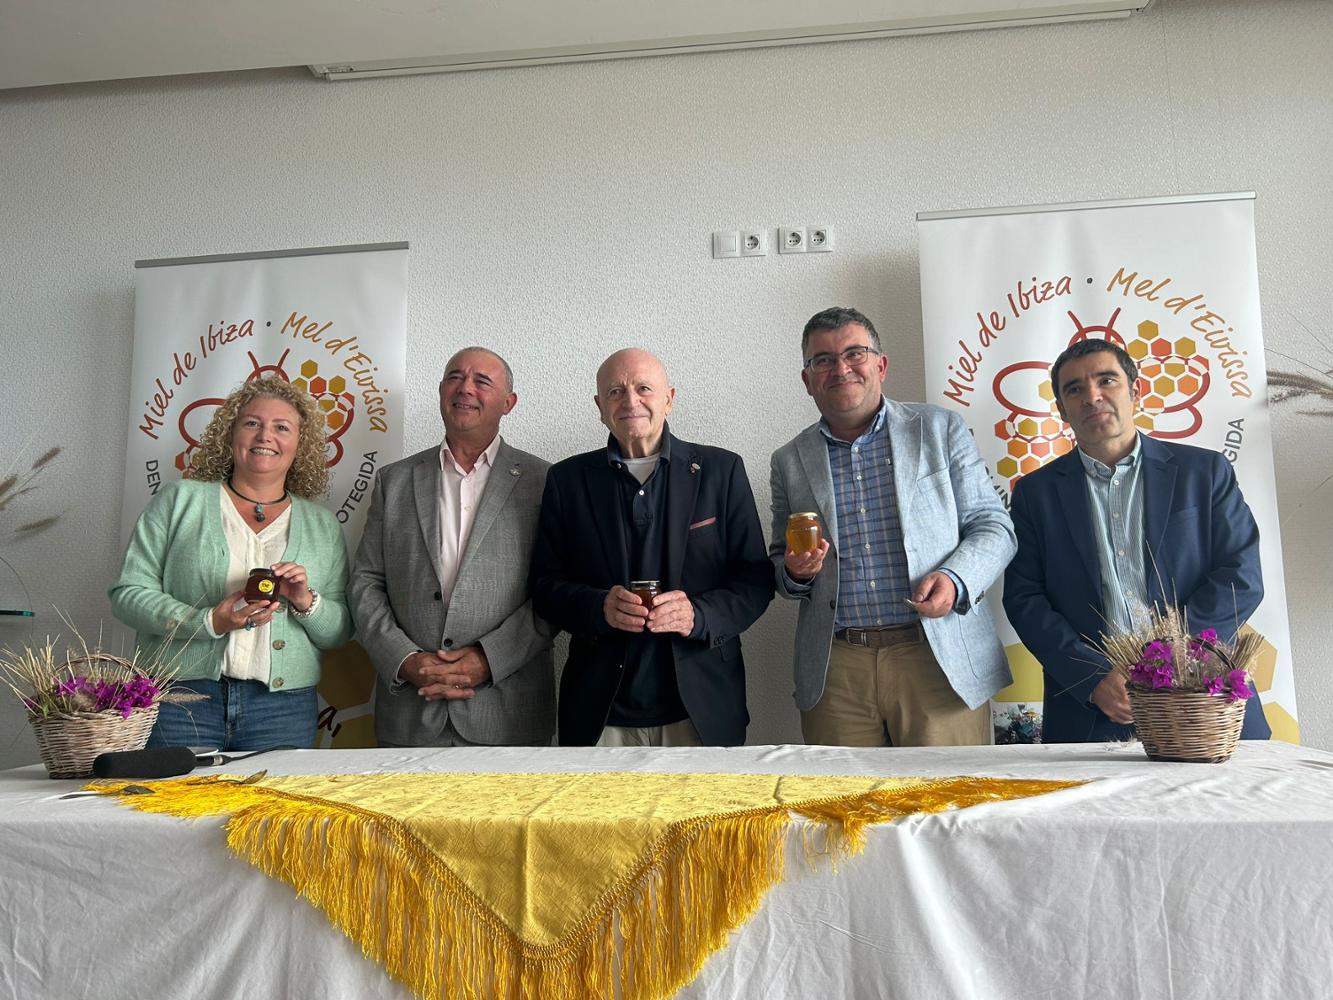 Tast de la primera anyada de la DOP Mel d’Eivissa - Notícies - Illes Balears - Productes agroalimentaris, denominacions d'origen i gastronomia balear